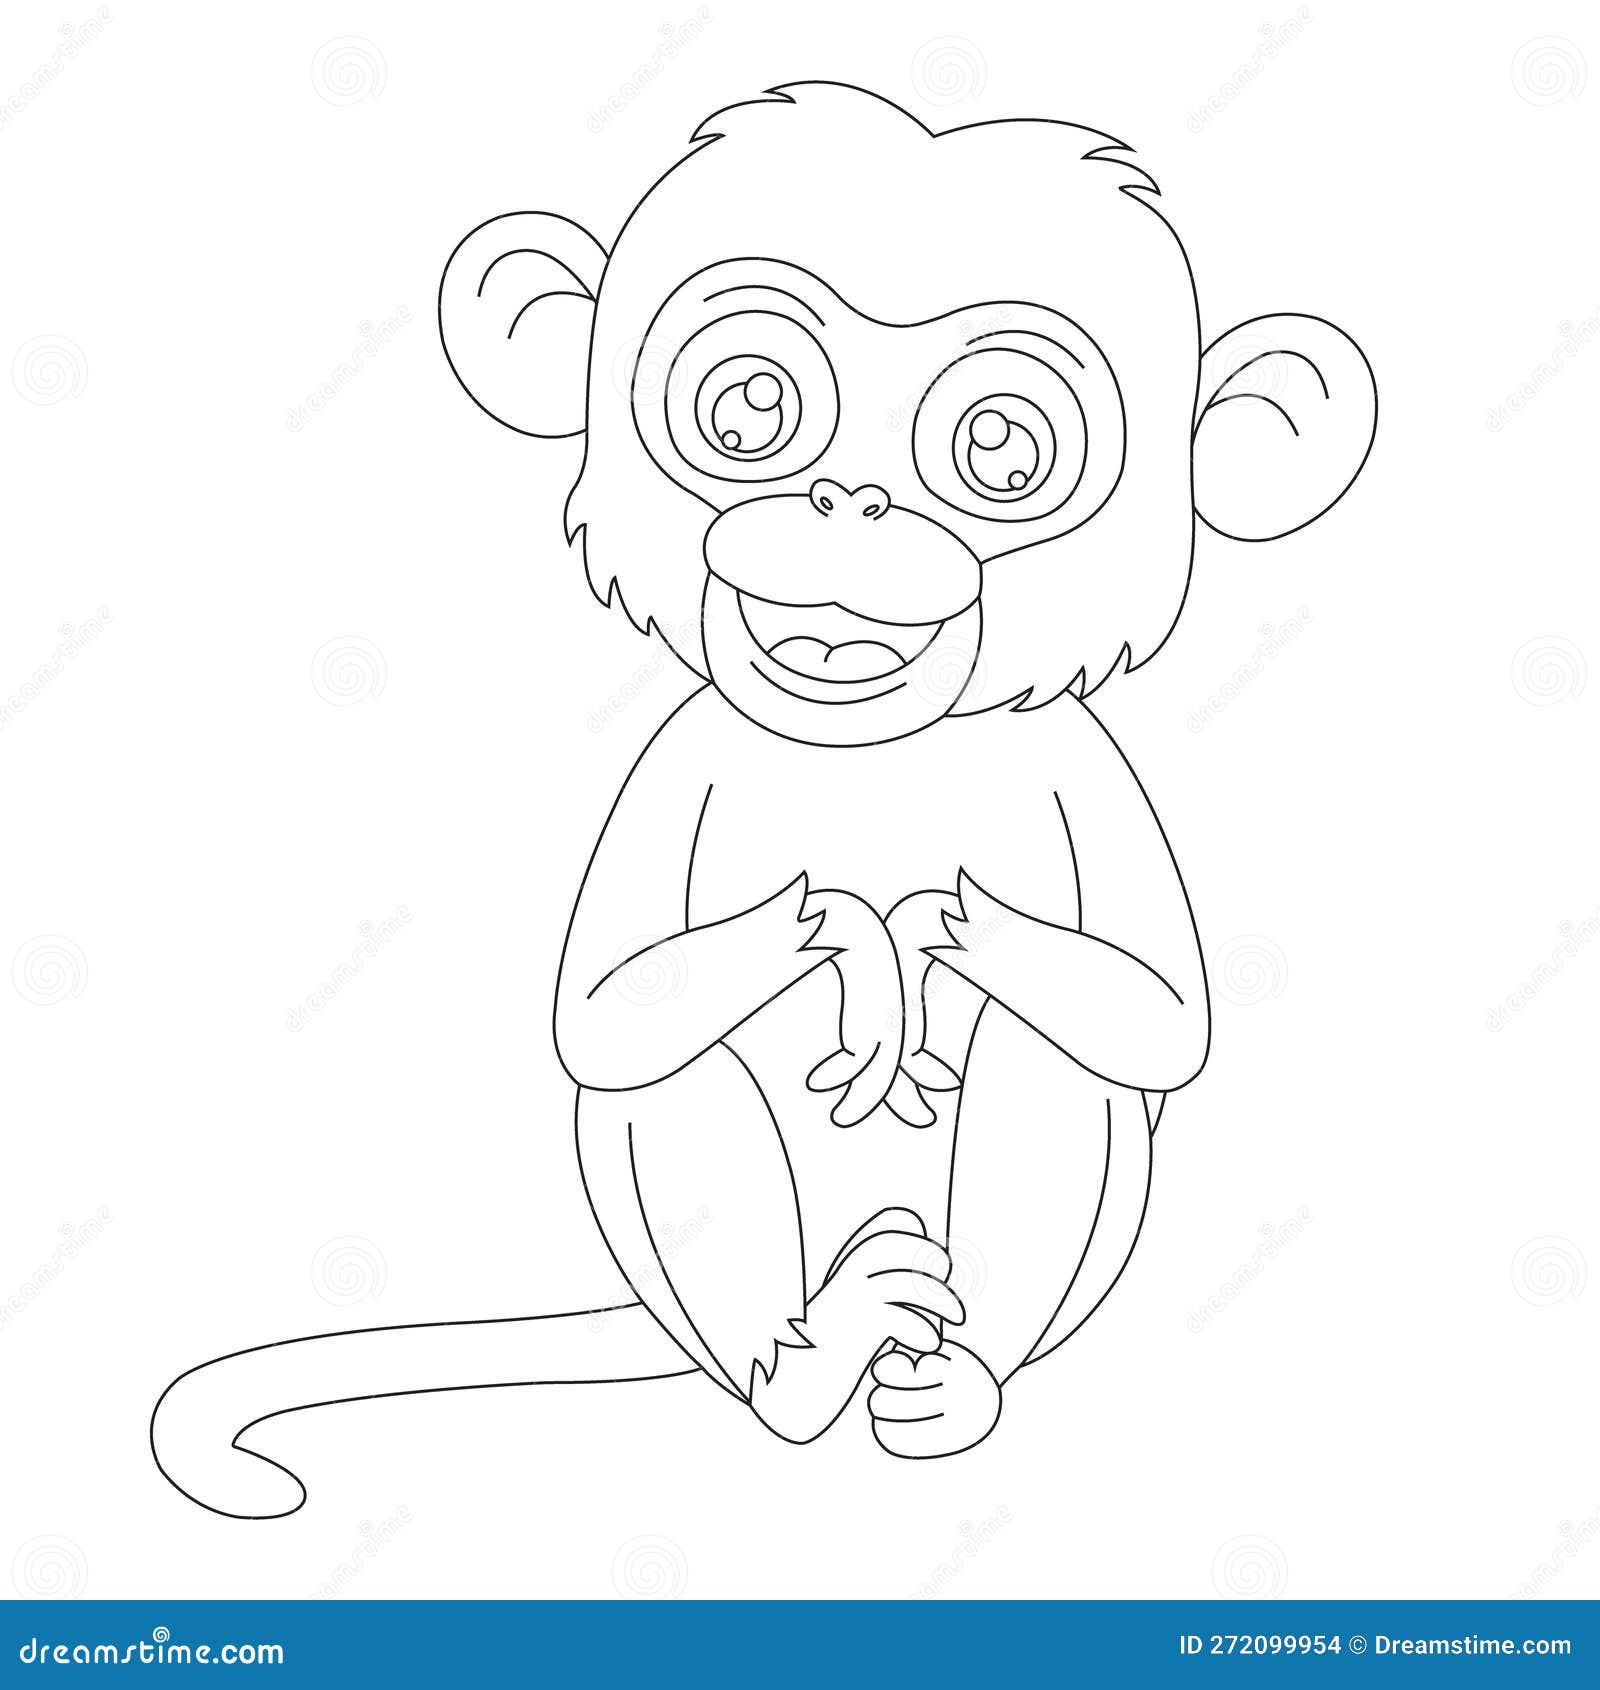 Página De Colorir De Macacos Fofinhos Para Crianças Desenho De Vetor De  Desenho De Livros Coloridos De Animais Ilustração do Vetor - Ilustração de  vetor, fofofo: 272101055